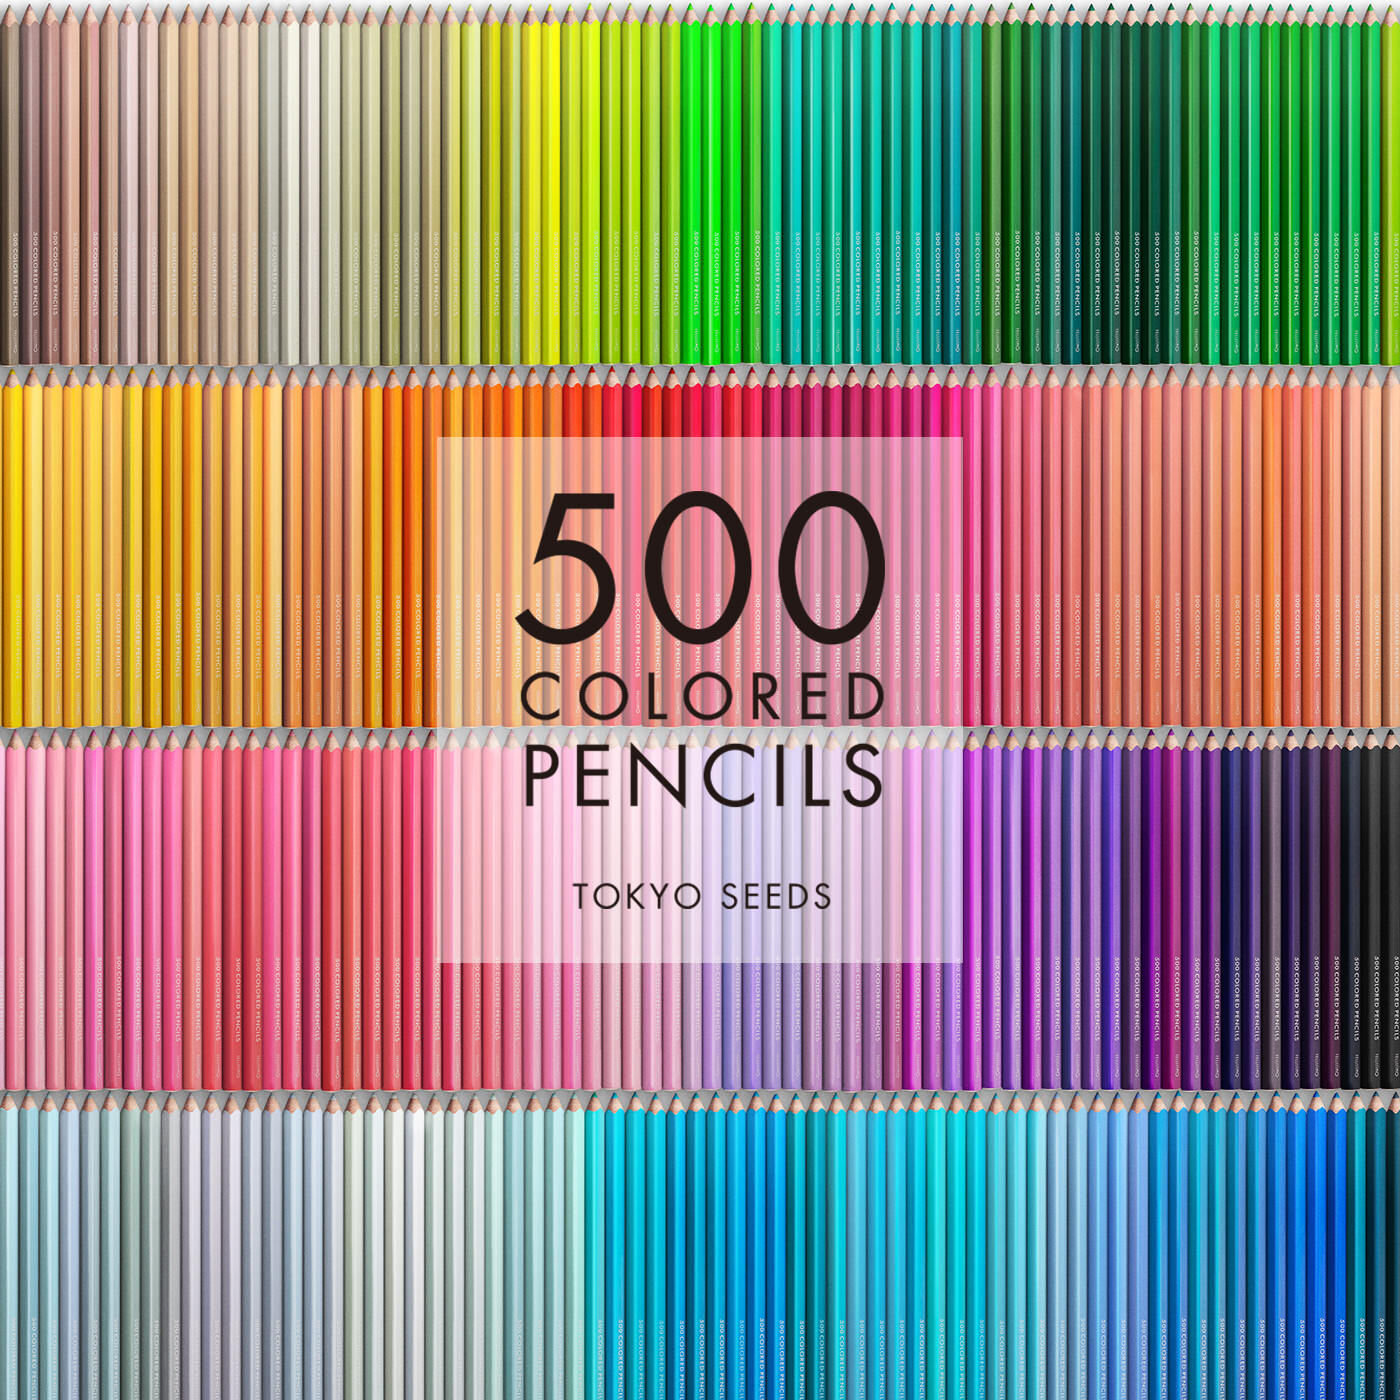 Real Stock|【95/500 WINDOW GLASS】500色の色えんぴつ TOKYO SEEDS|1992年、世界初の「500色」という膨大な色数の色えんぴつが誕生して以来、その販売数は発売当初から合わせると、世界55ヵ国10万セット以上。今回、メイド・イン・ジャパンにこだわり、すべてが新しく生まれ変わって登場しました。